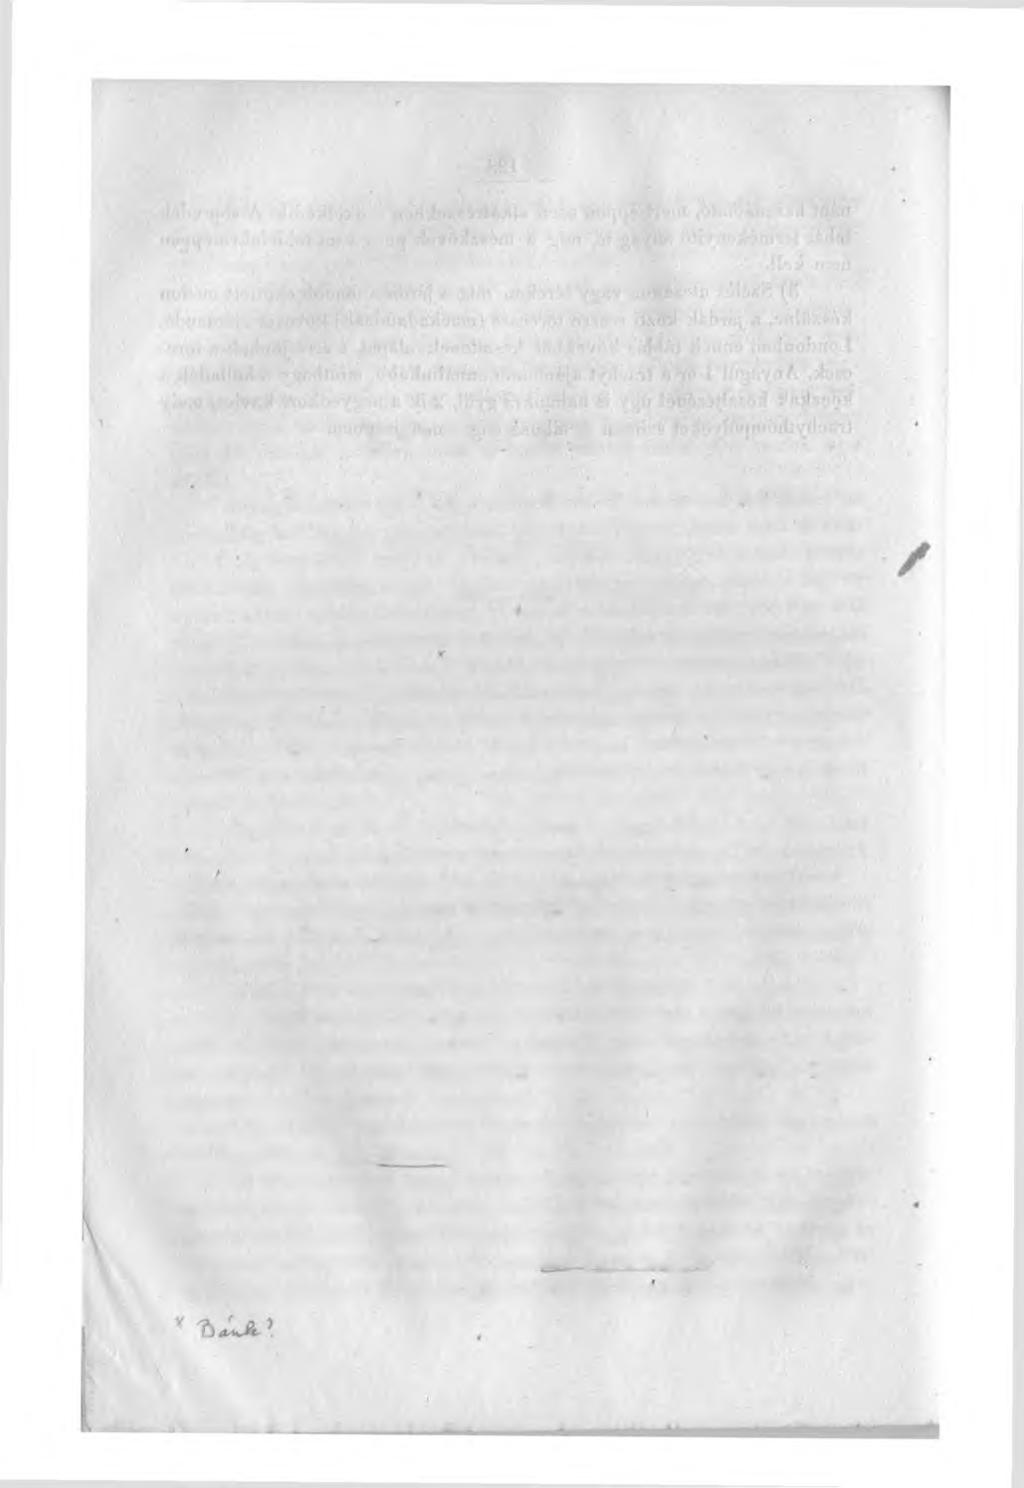 X V. ROM H Á N Y, DJ LEI. HELYE A NEGYEDKORI CSATIATOKNAK- Kubinyi Forencztöl. Felolvasta. 1863. julius 15-kén a szakgyülésen.